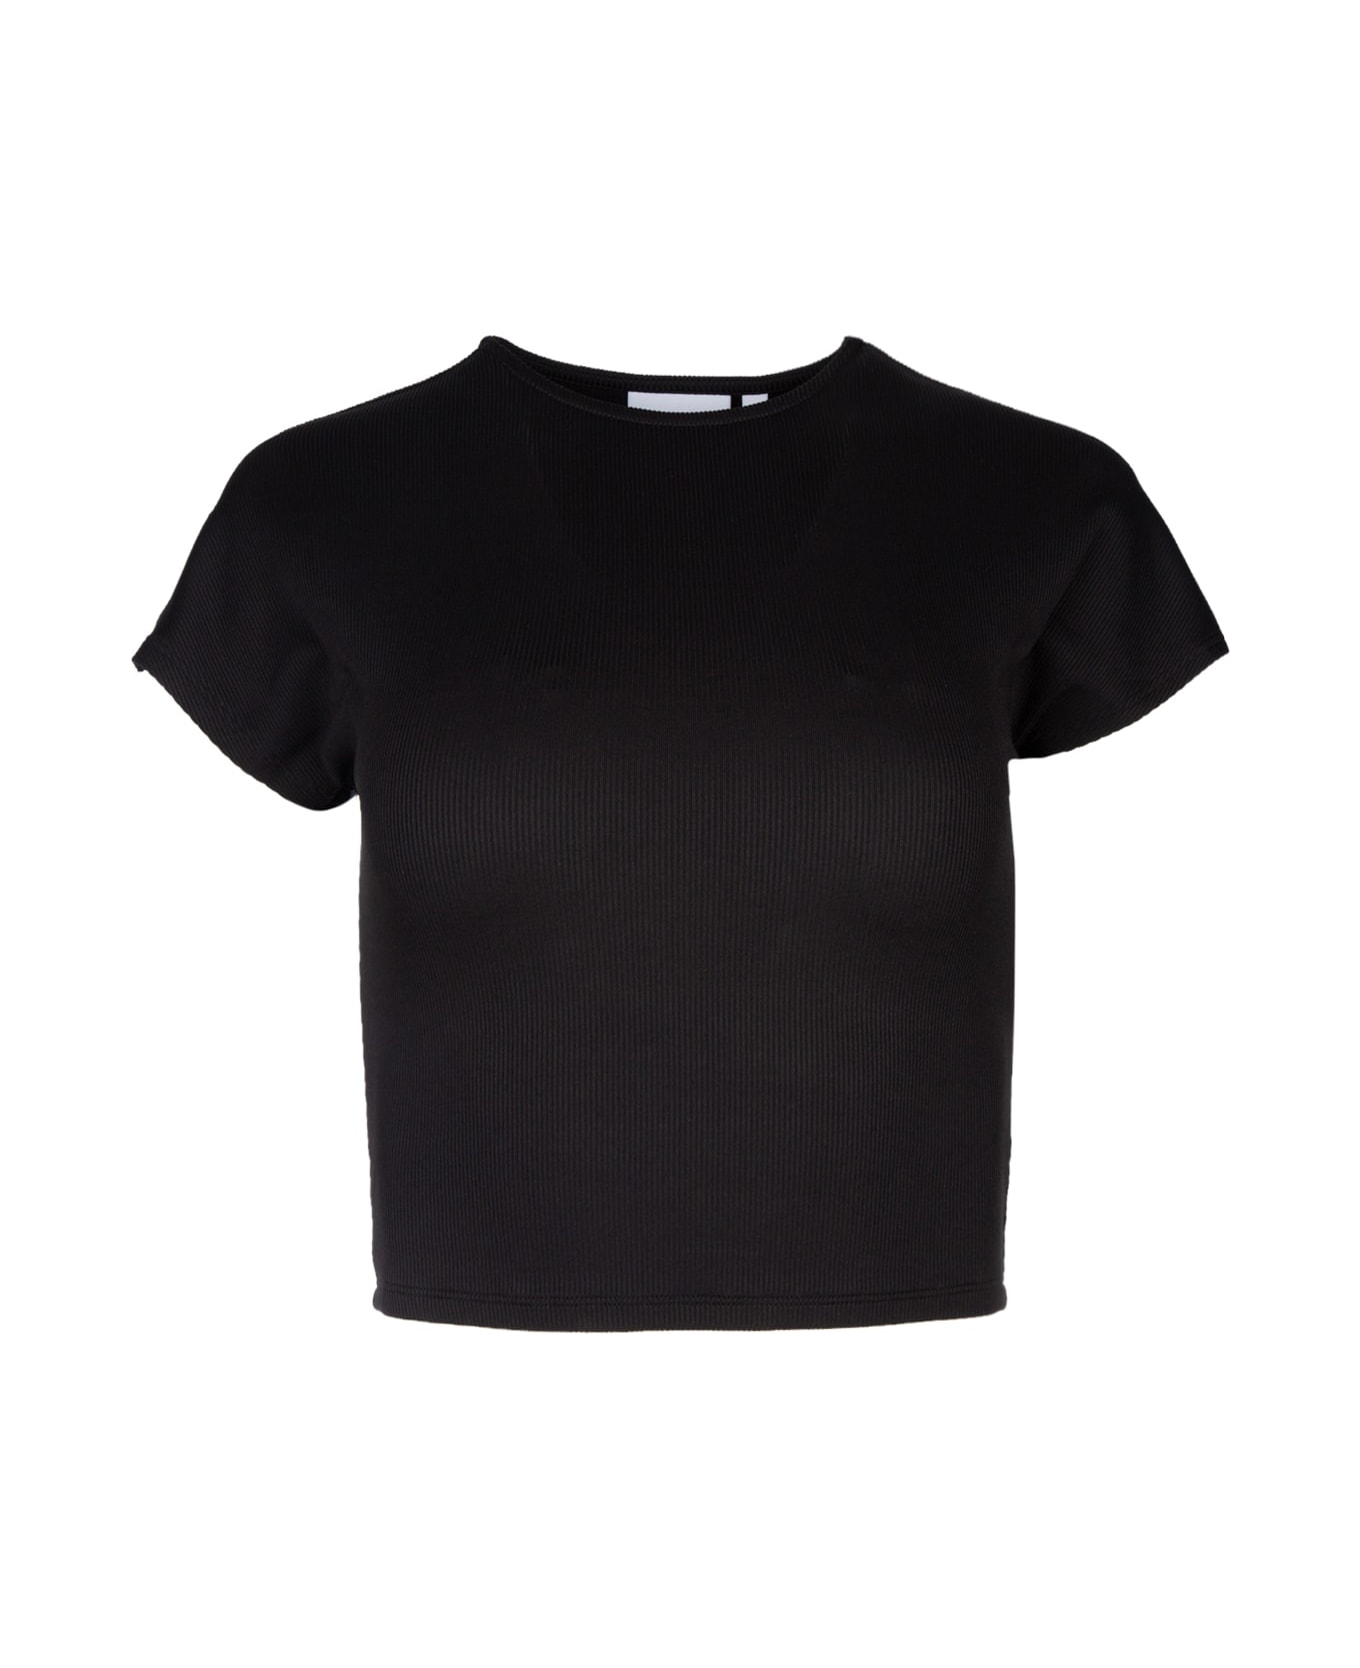 Calvin Klein T-shirt - Black